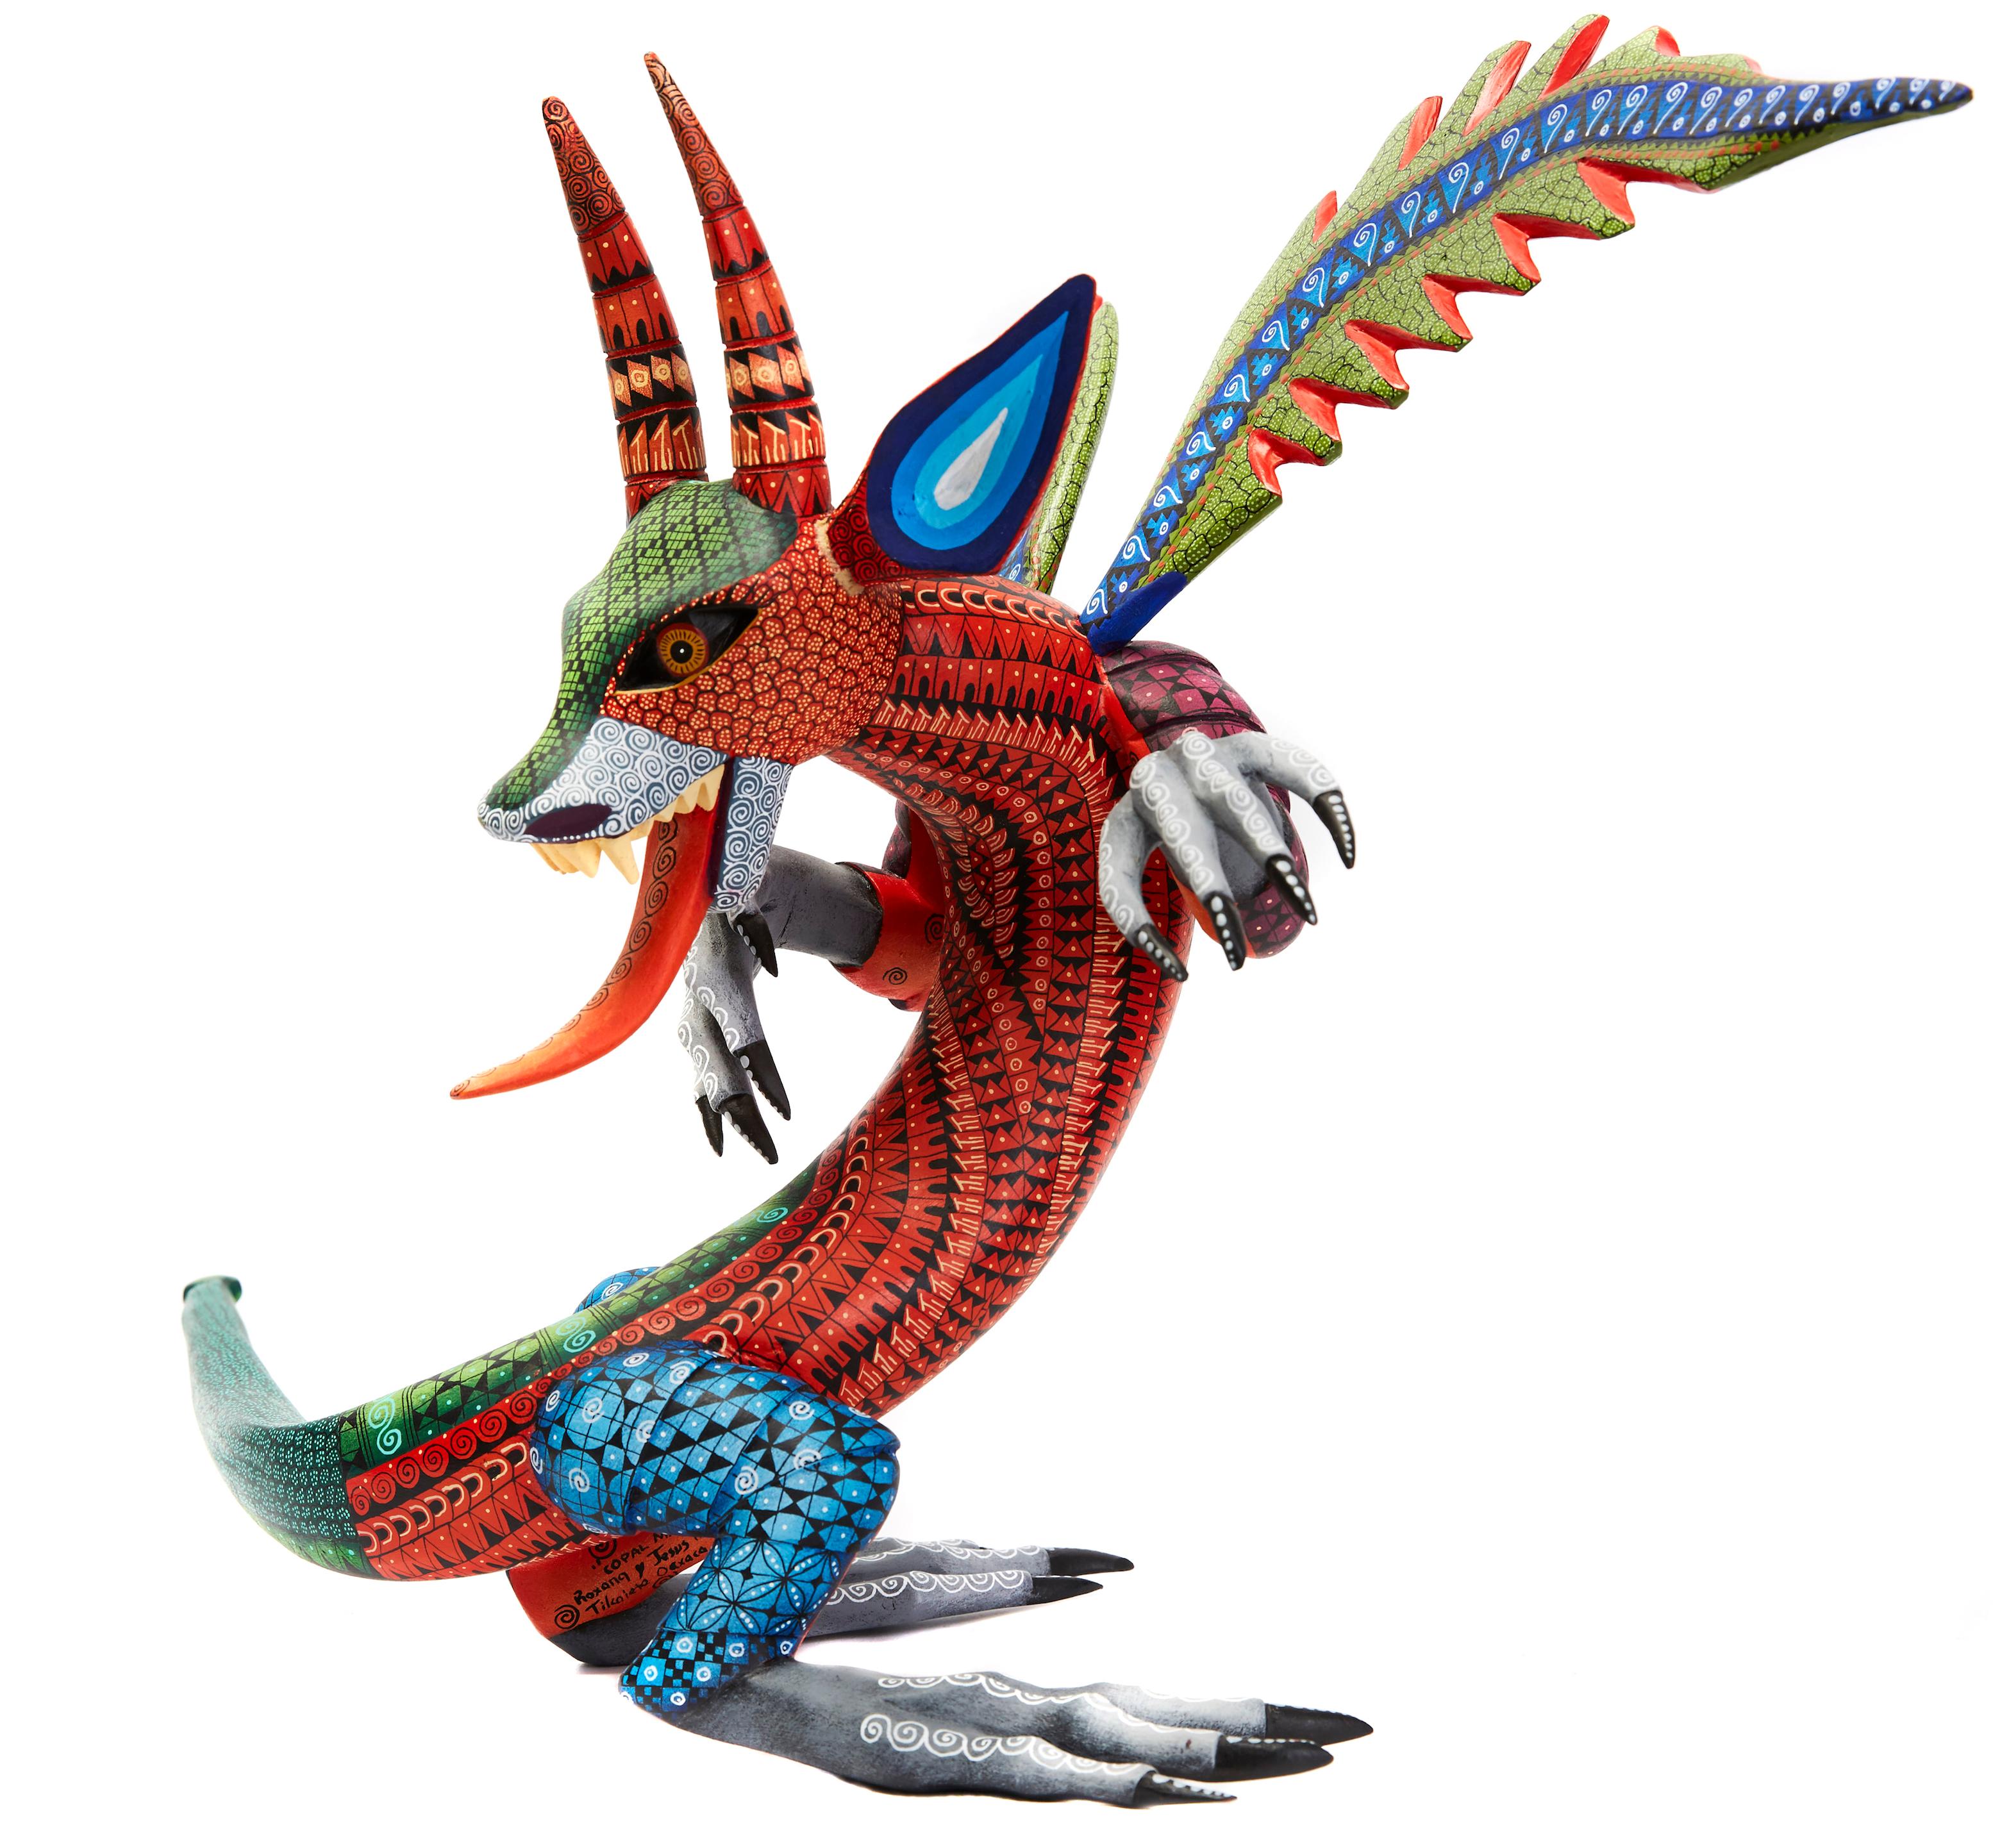 Dragon Fantastico - Fantastic Dragon Alebrije - Mexican Folk Art - Wood Carving  - Brown Abstract Sculpture by Roxana y Jesus Hernandez